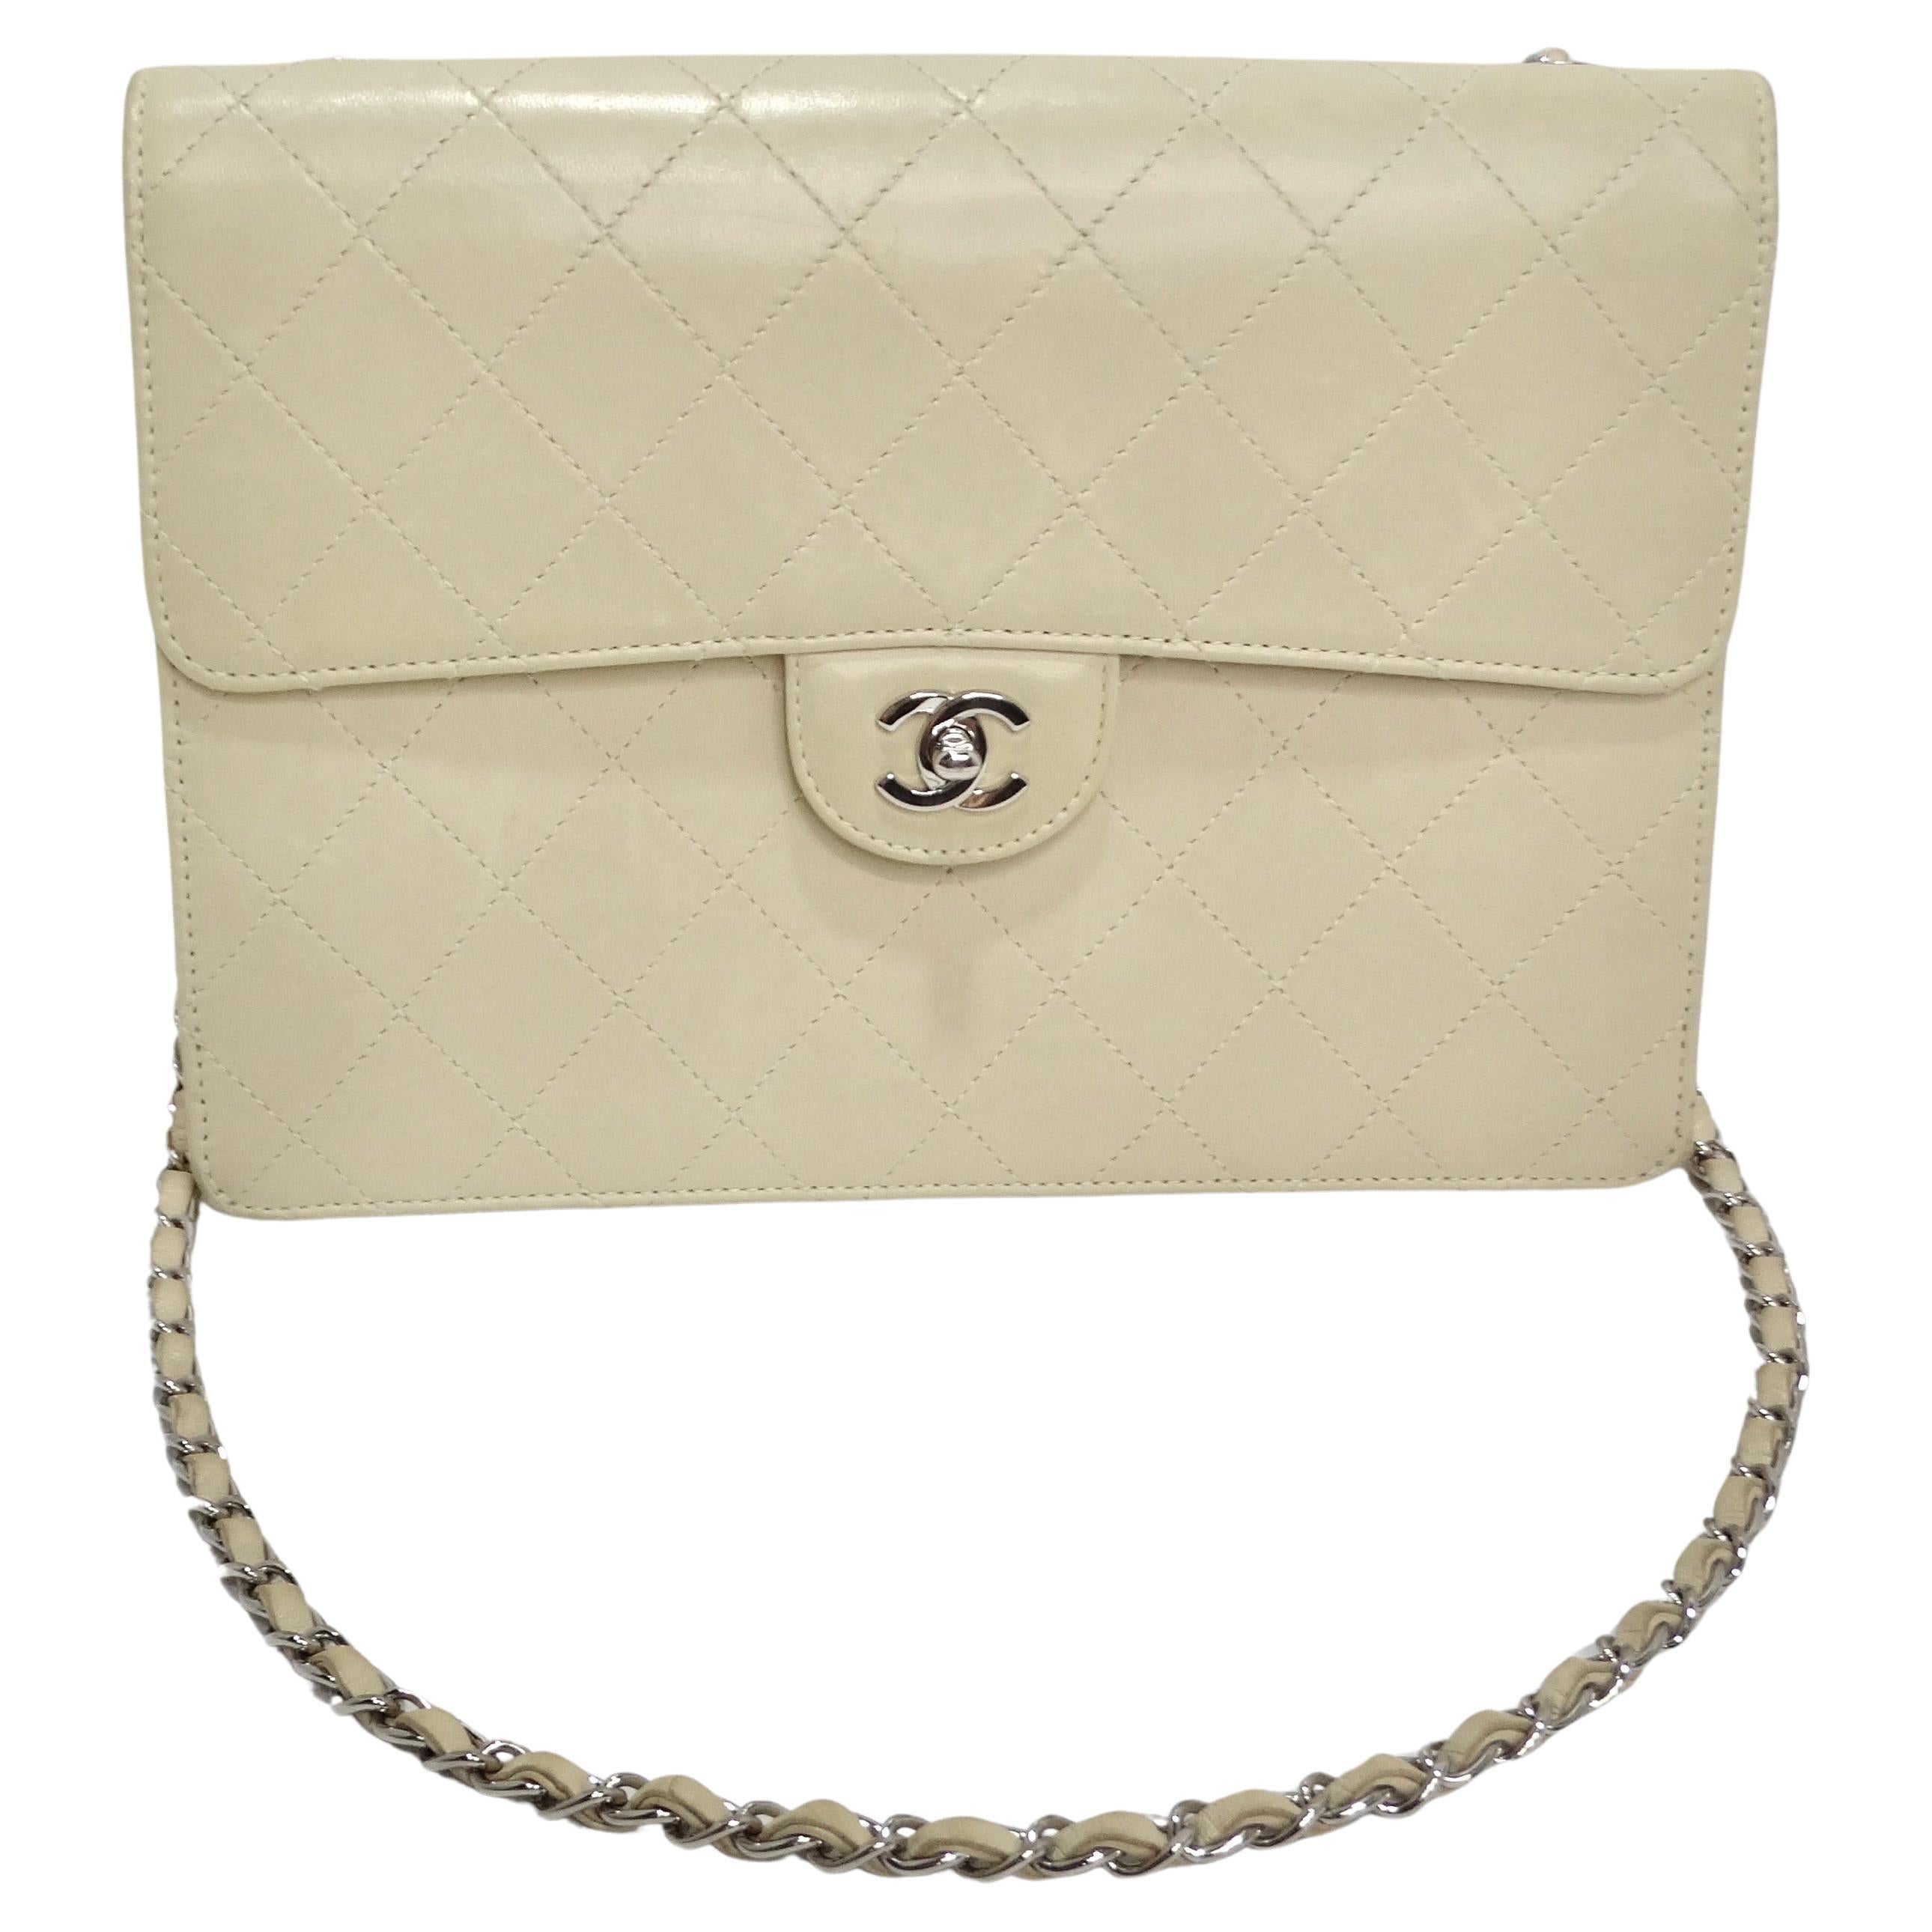 Chanel Vintage Cc Shoulder Bag - 181 For Sale on 1stDibs